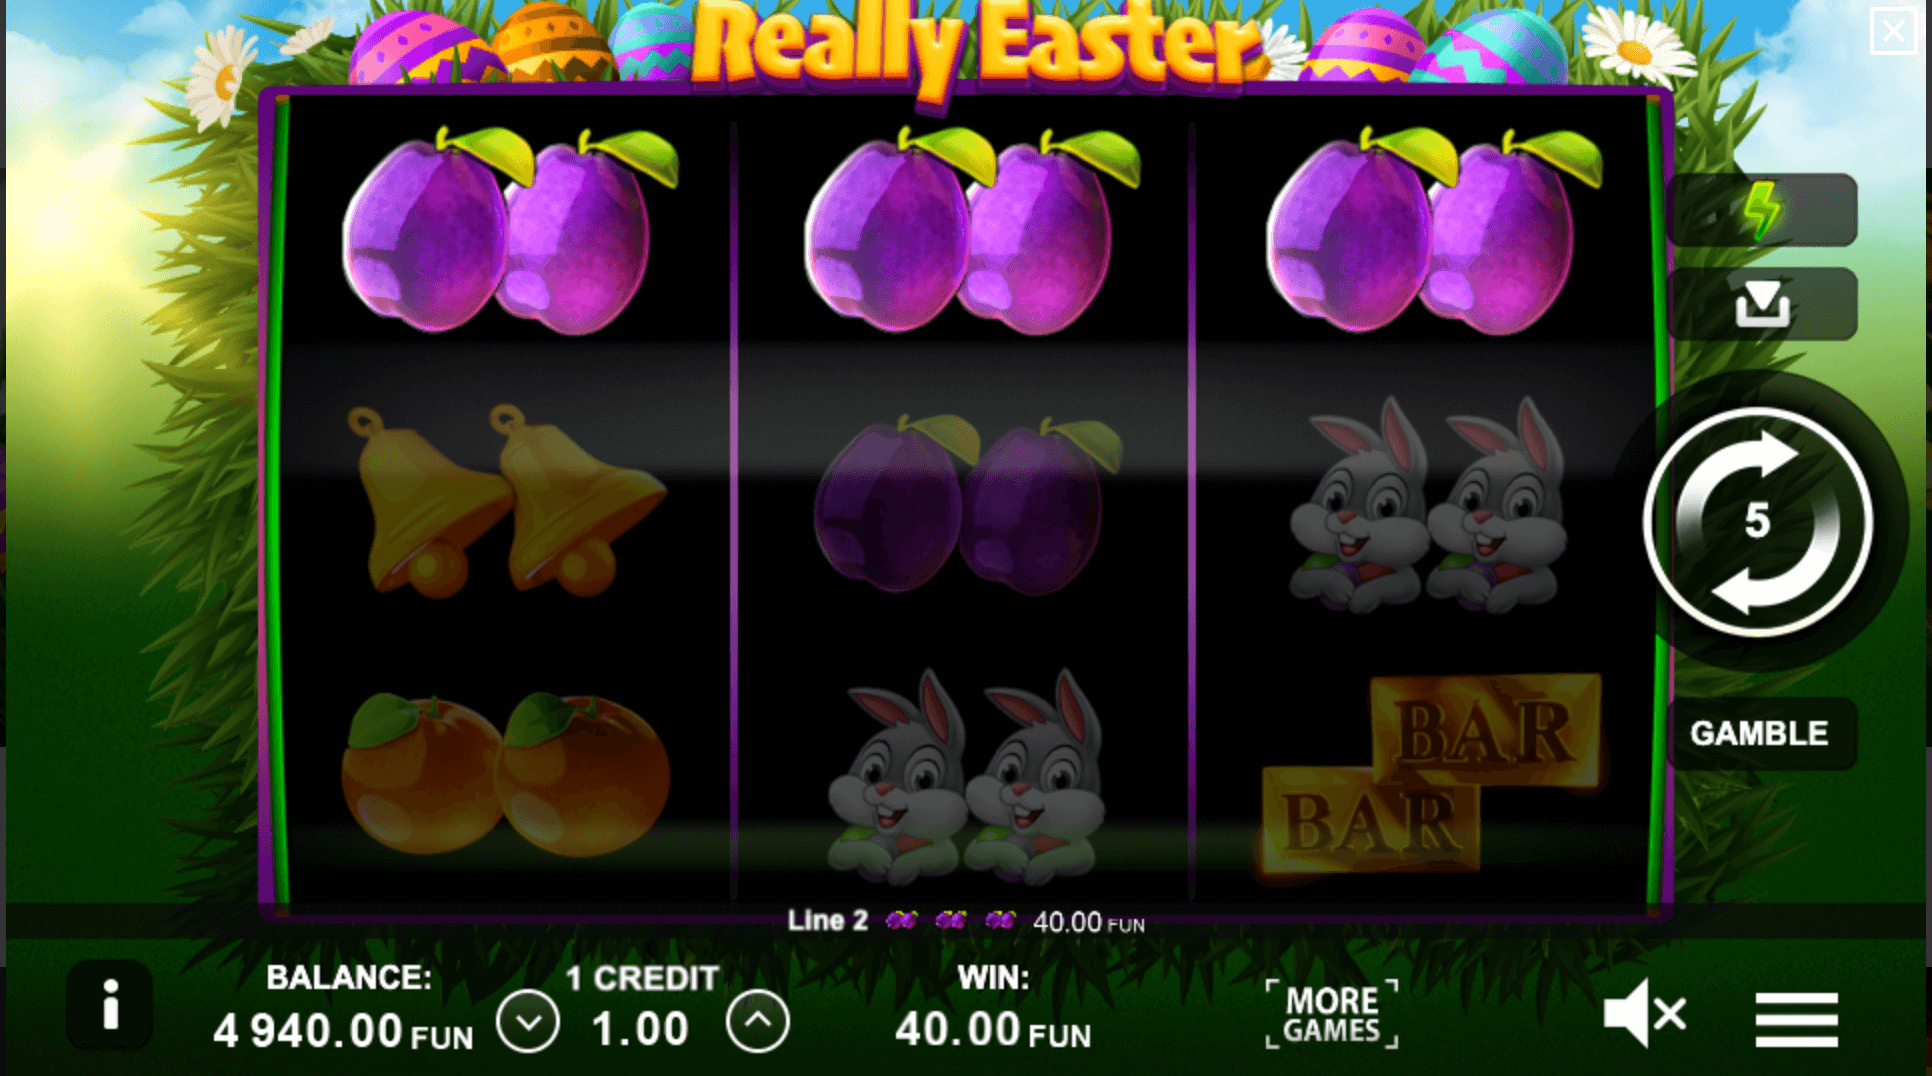 Really Easter Průběh hry